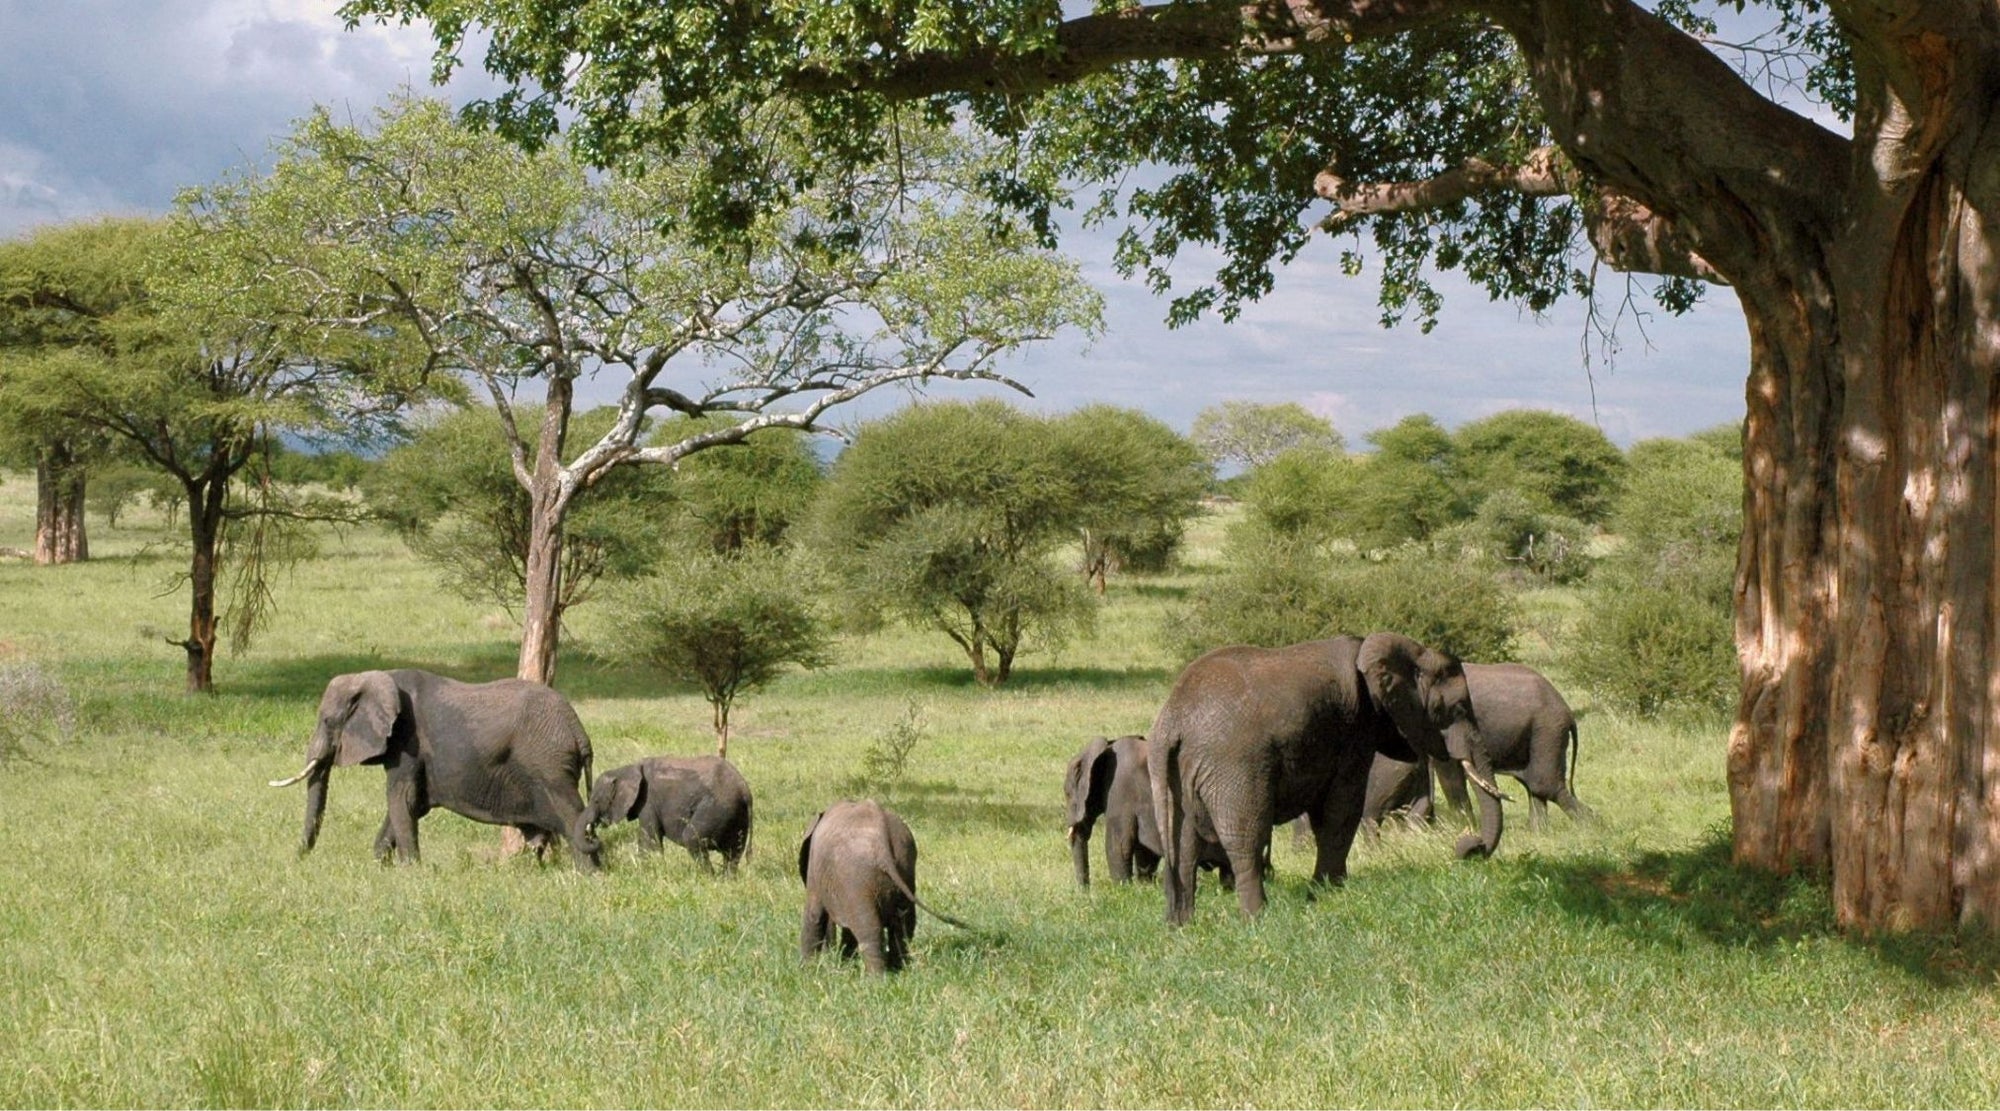 African elephants: keystone species